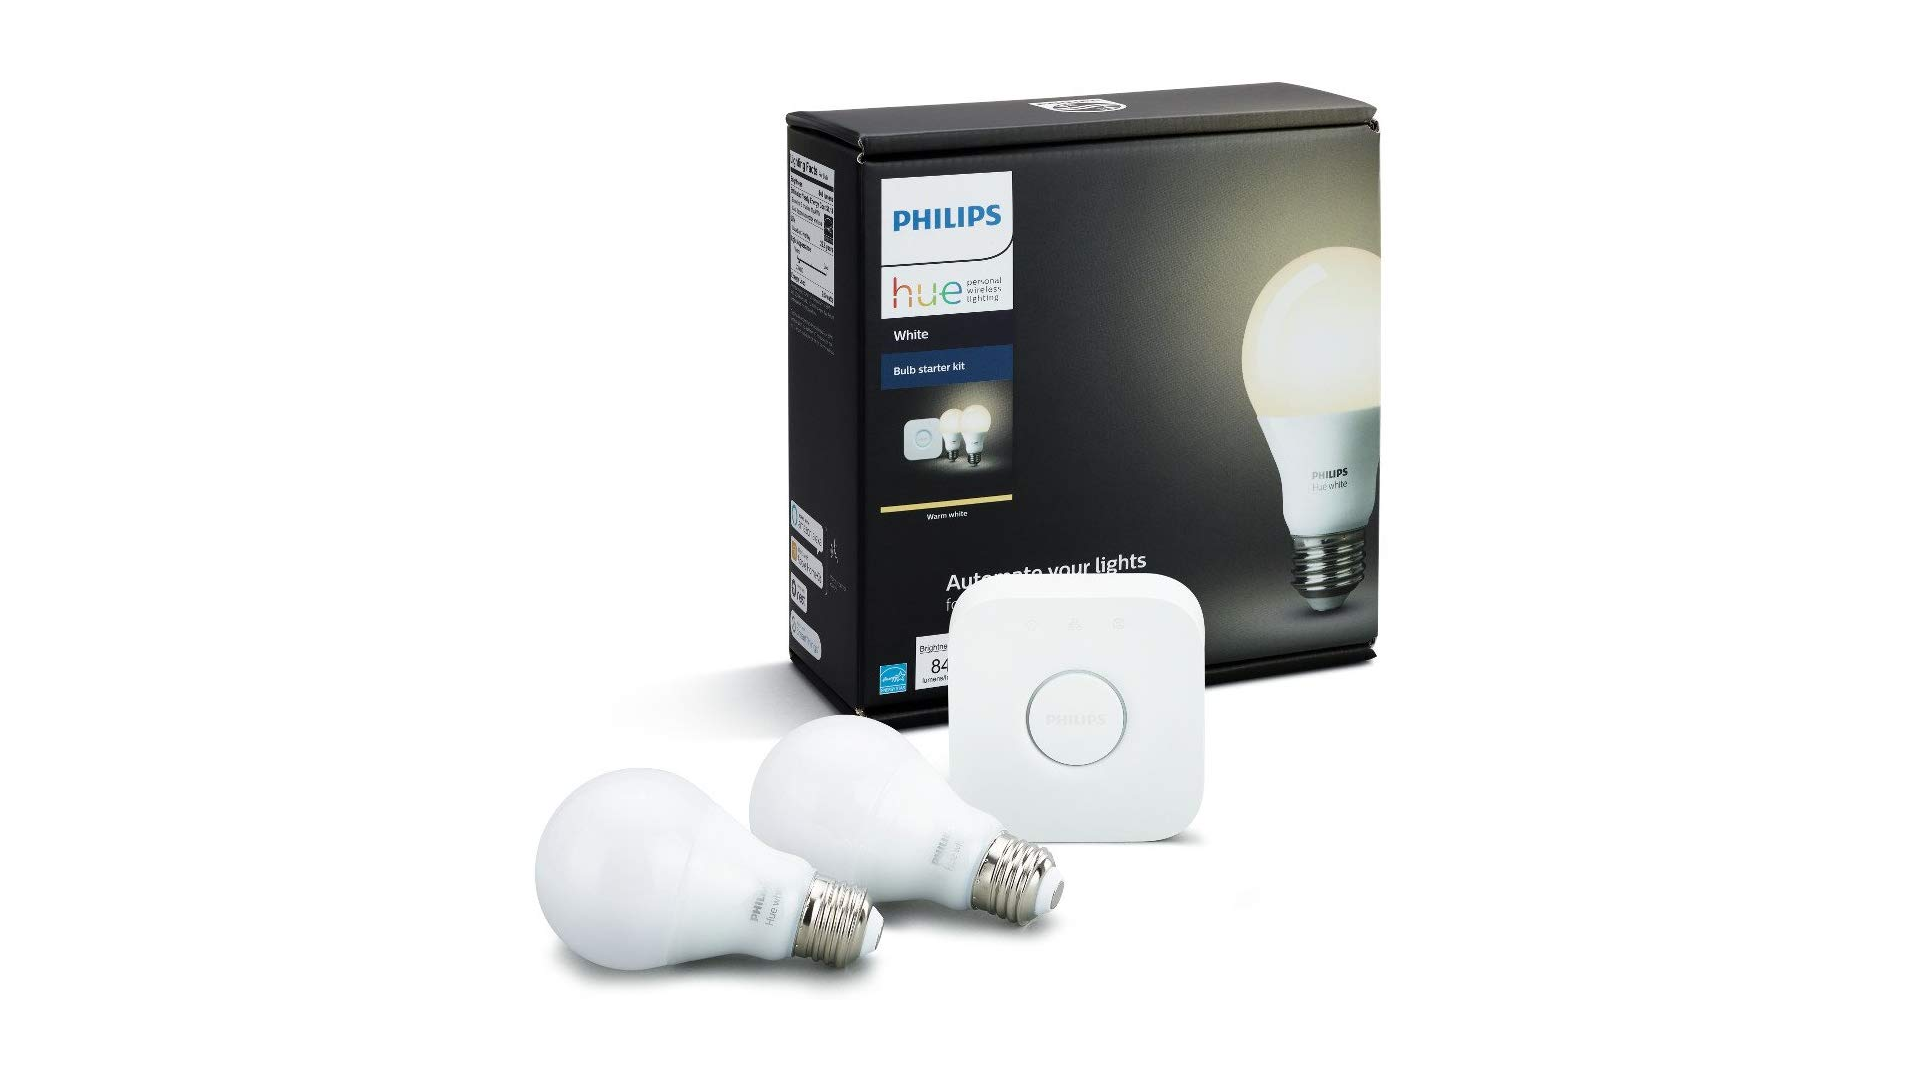 Bộ khởi động bóng đèn thông minh Philips Hue màu trắng.